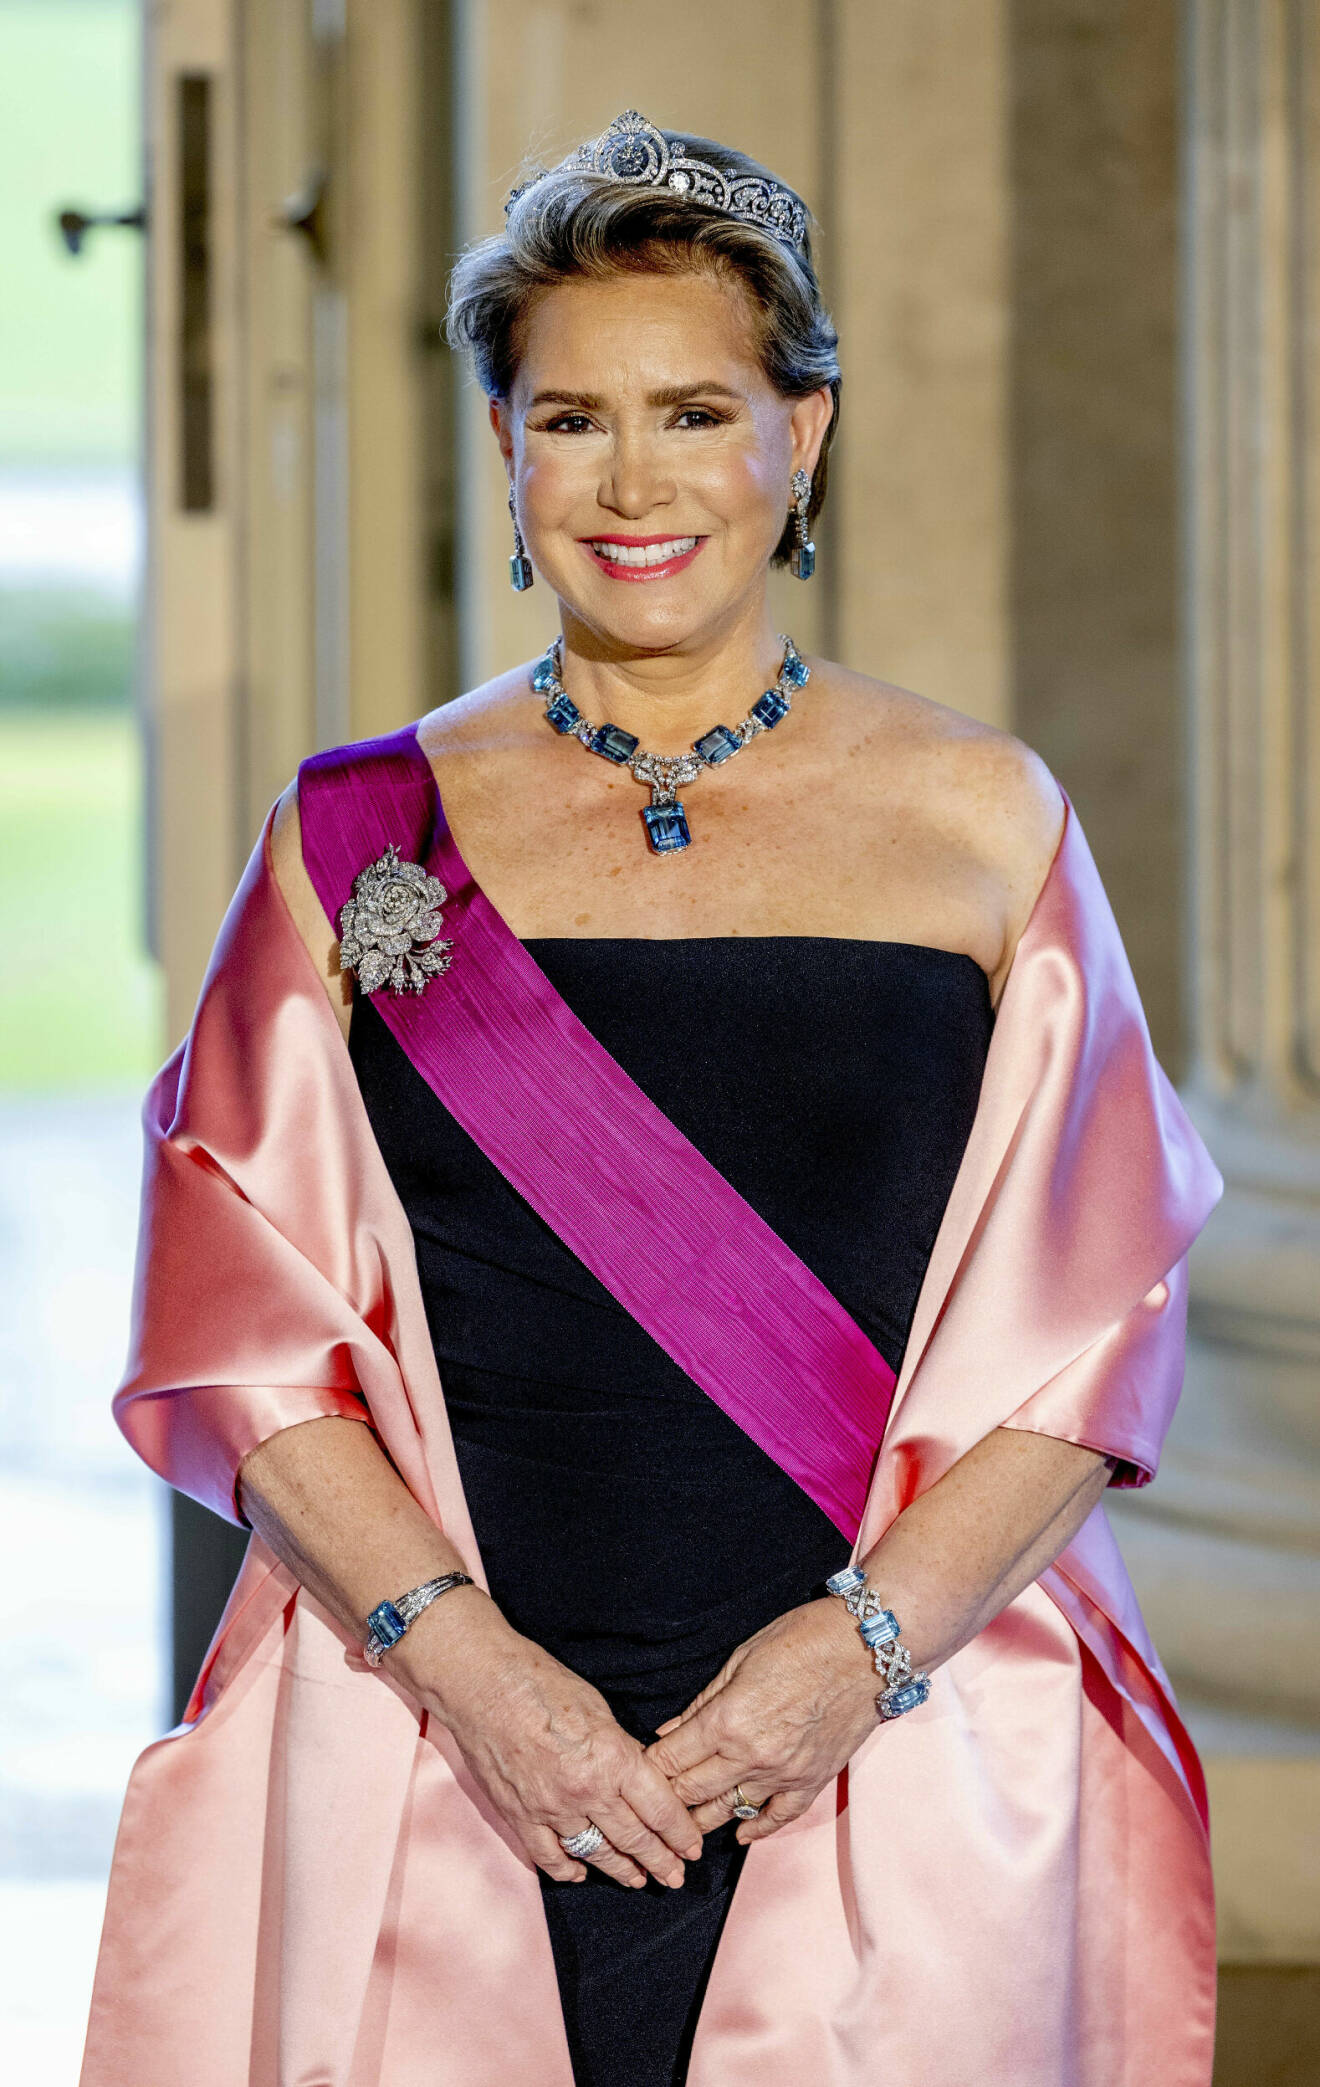 Storhertiginnan Maria Teresa av Luxemburg på galamiddag i tiara